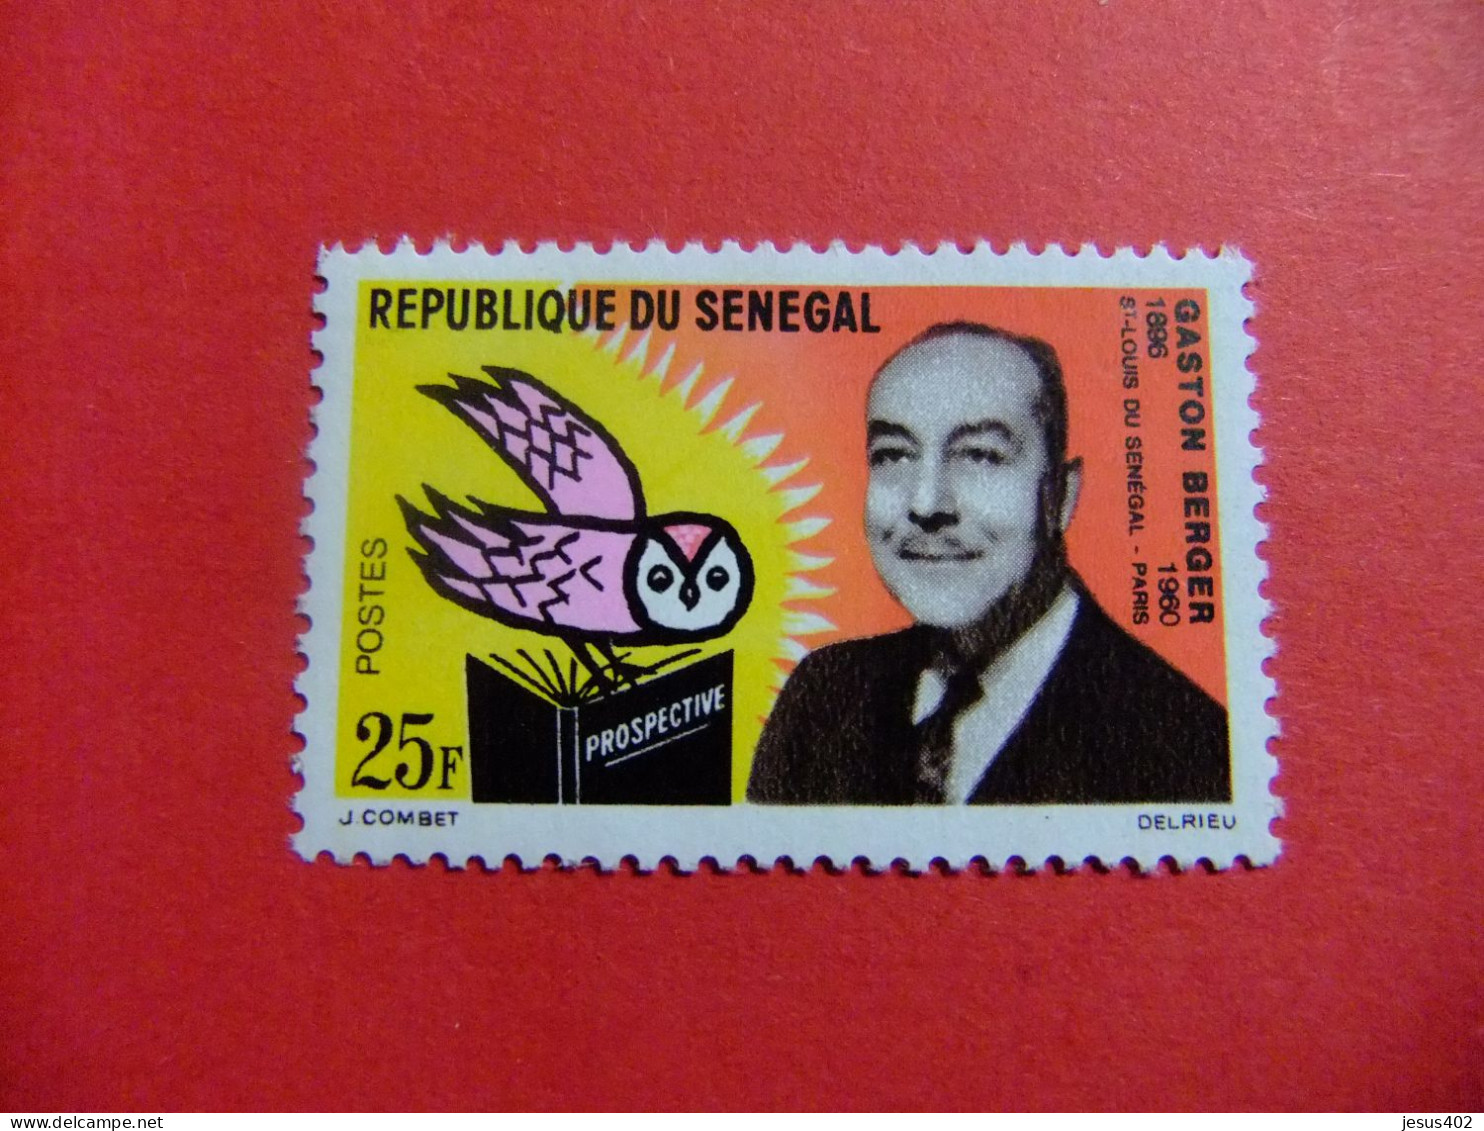 55 REPUBLICA SENEGAL 1963 / GASTON BERGER / YVERT 232 ** MNH - Sénégal (1960-...)